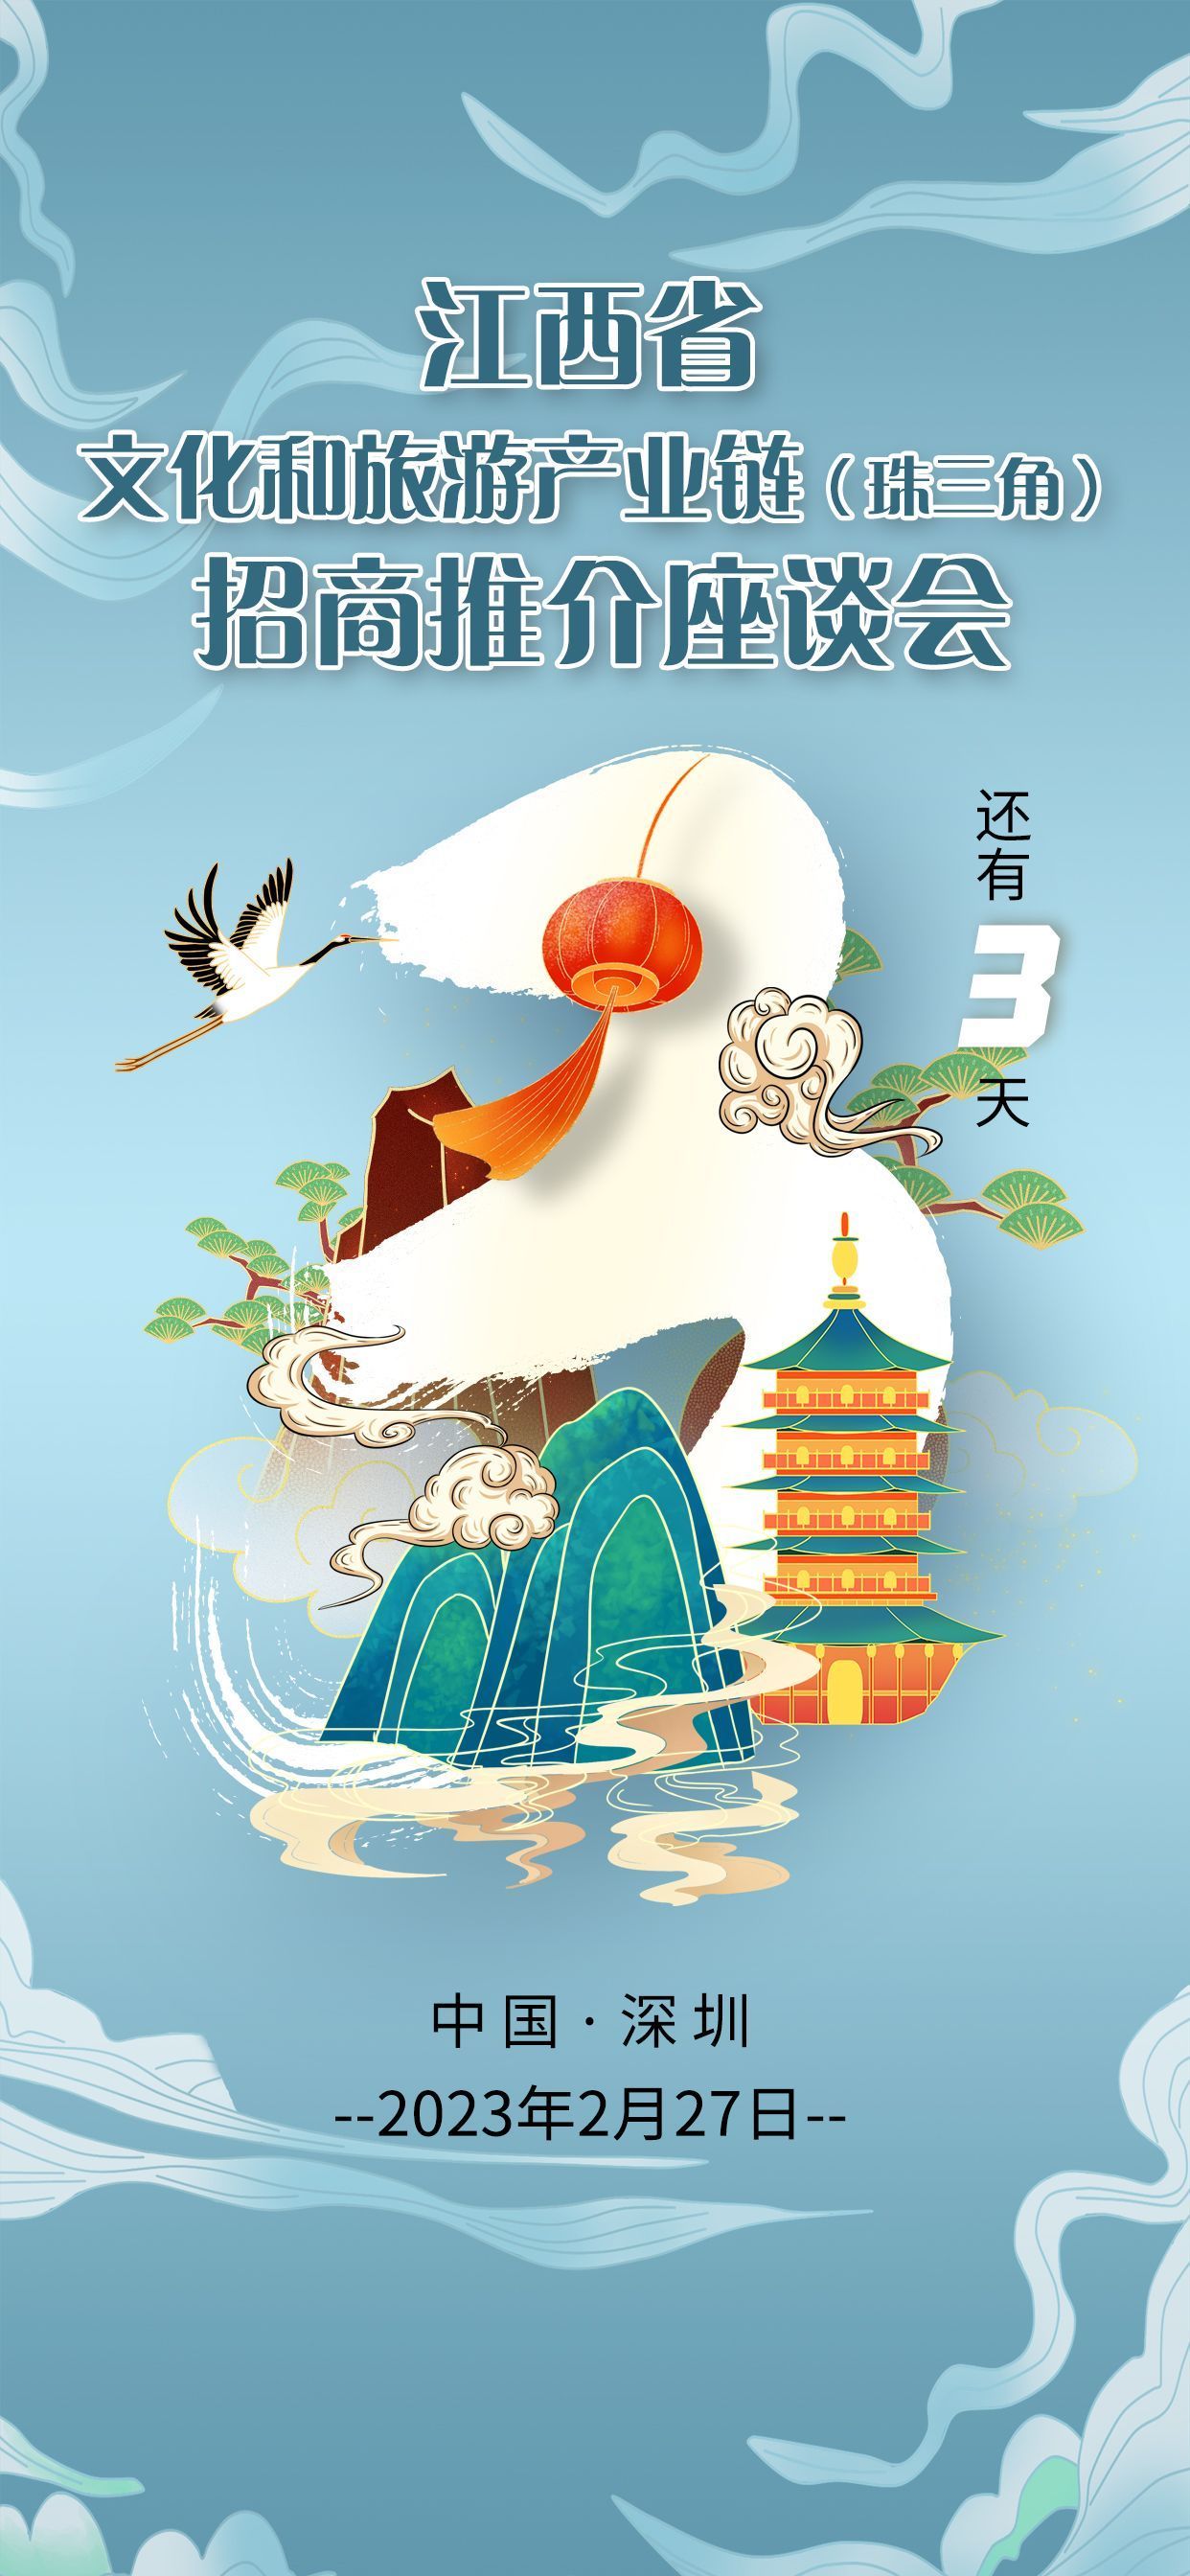 就在2月27日！江西省文化和旅游产业链招商推介座谈会在深圳举行